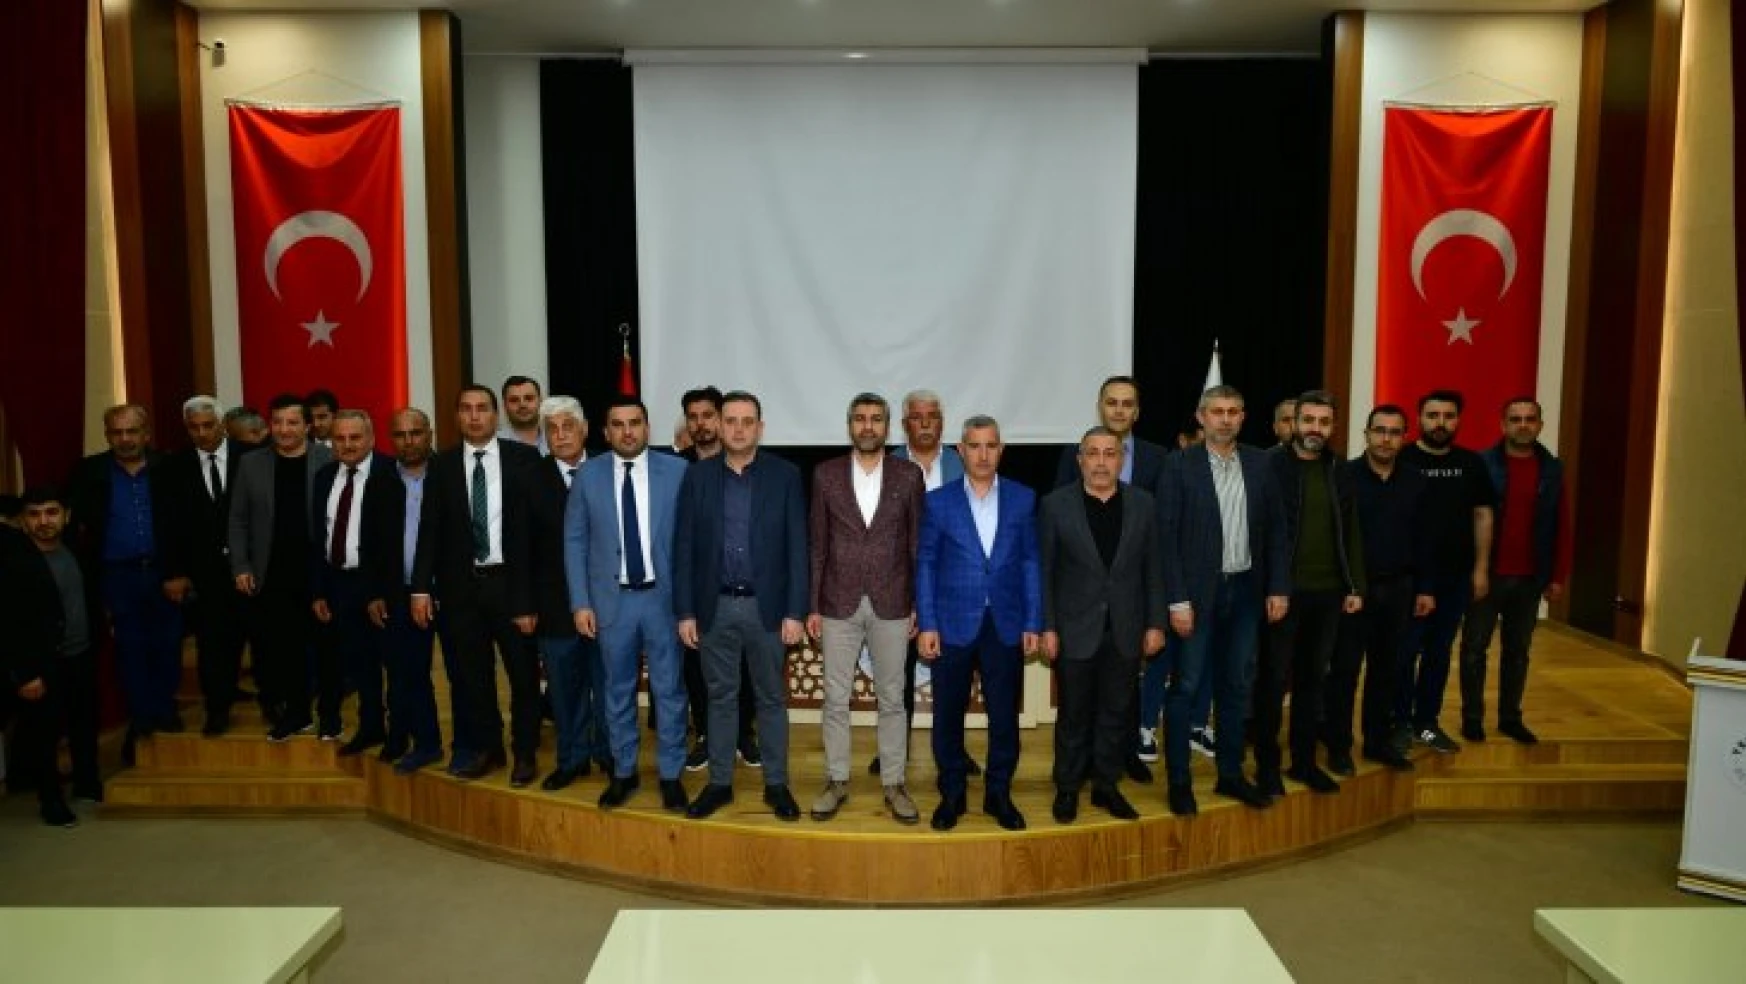 Yeşilyurt Belediyespor Kulüp Başkanlığına Mehmet Nakir Seçildi